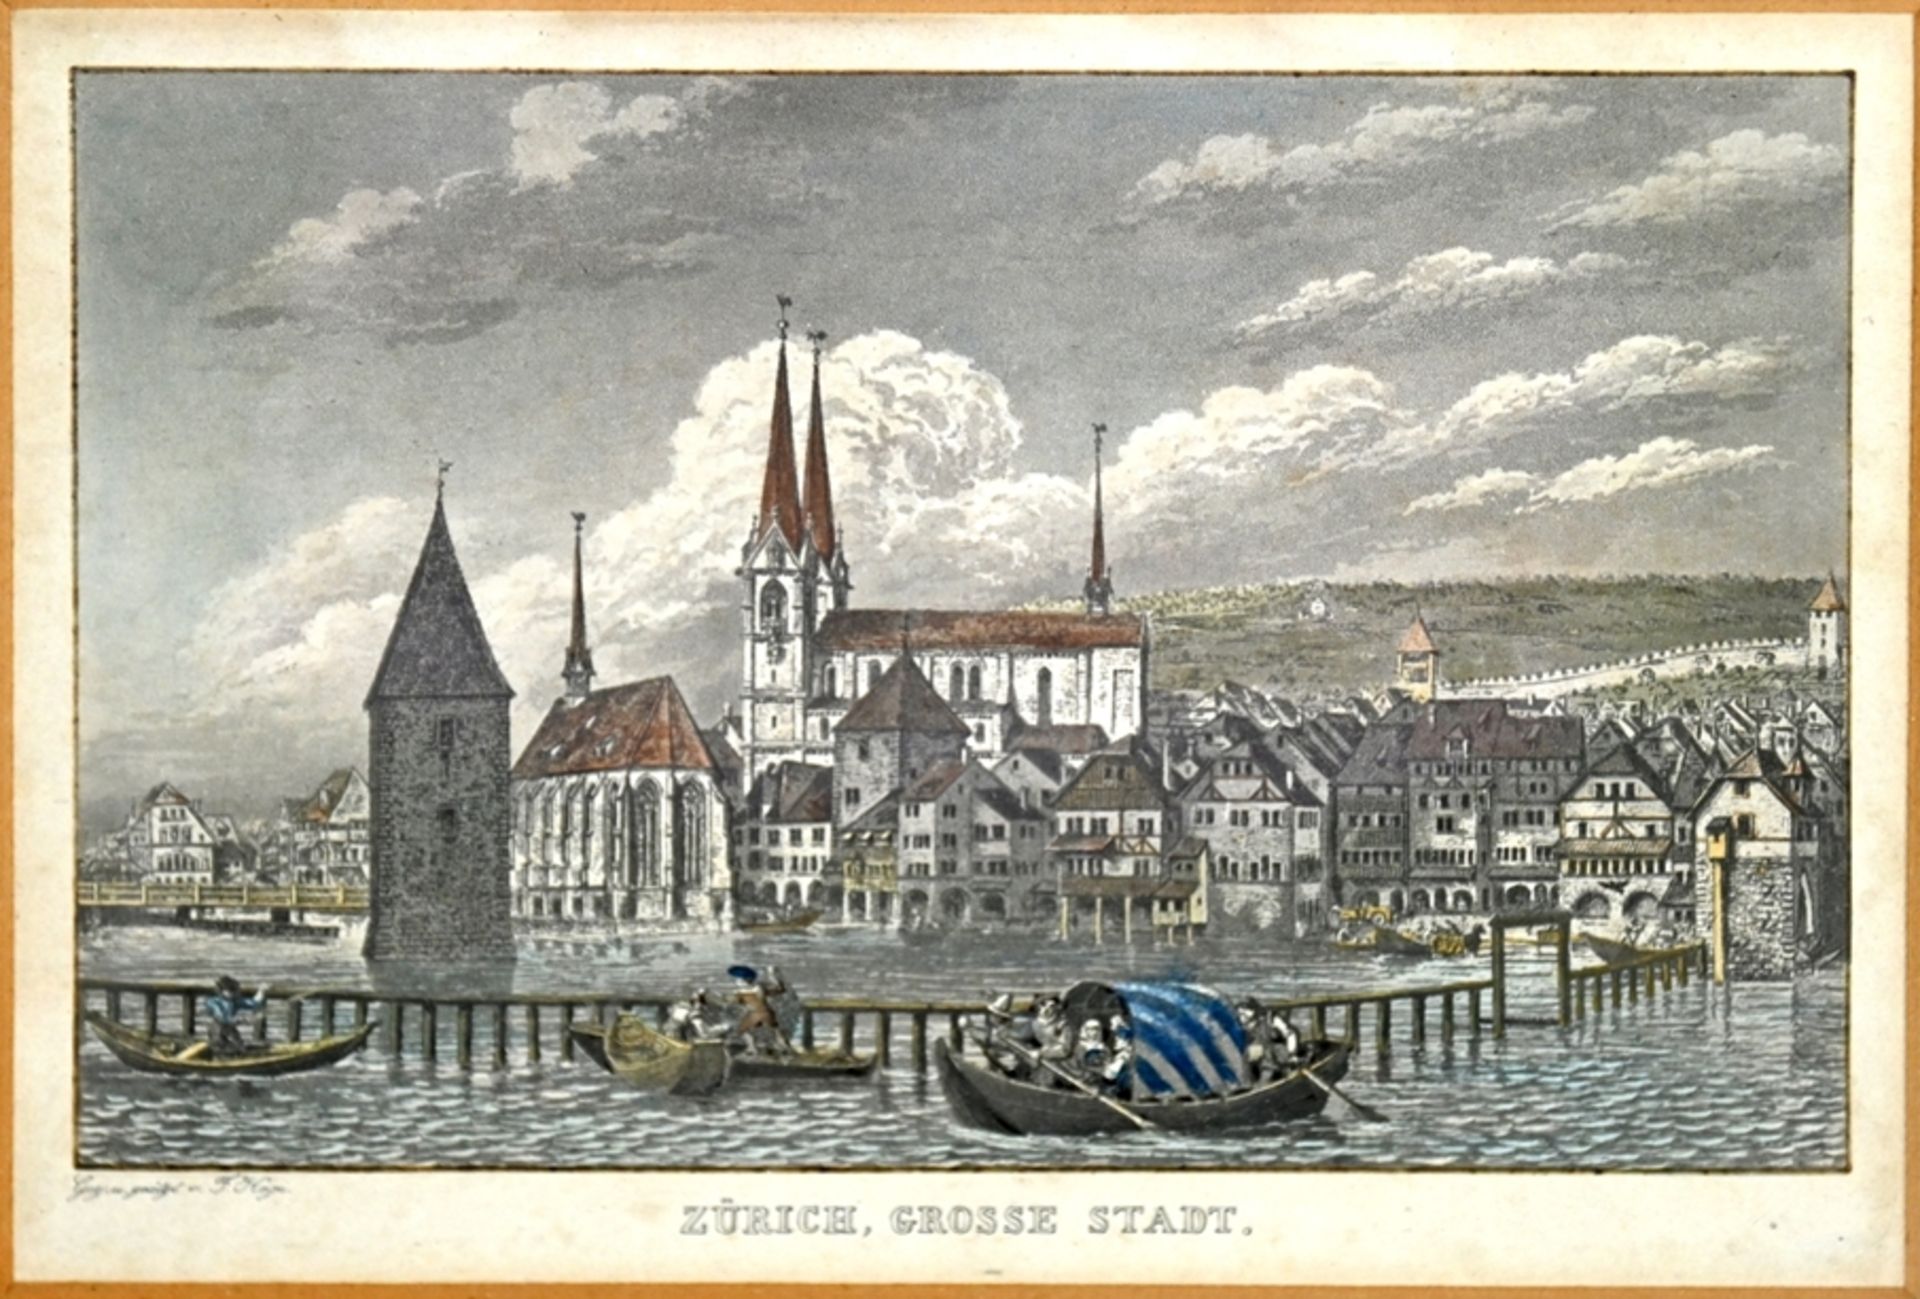 ZÜRICH, "Zürich große Stadt" Blick auf die Stadt mit Kirche von der Limmat aus gesehen, kolorierte